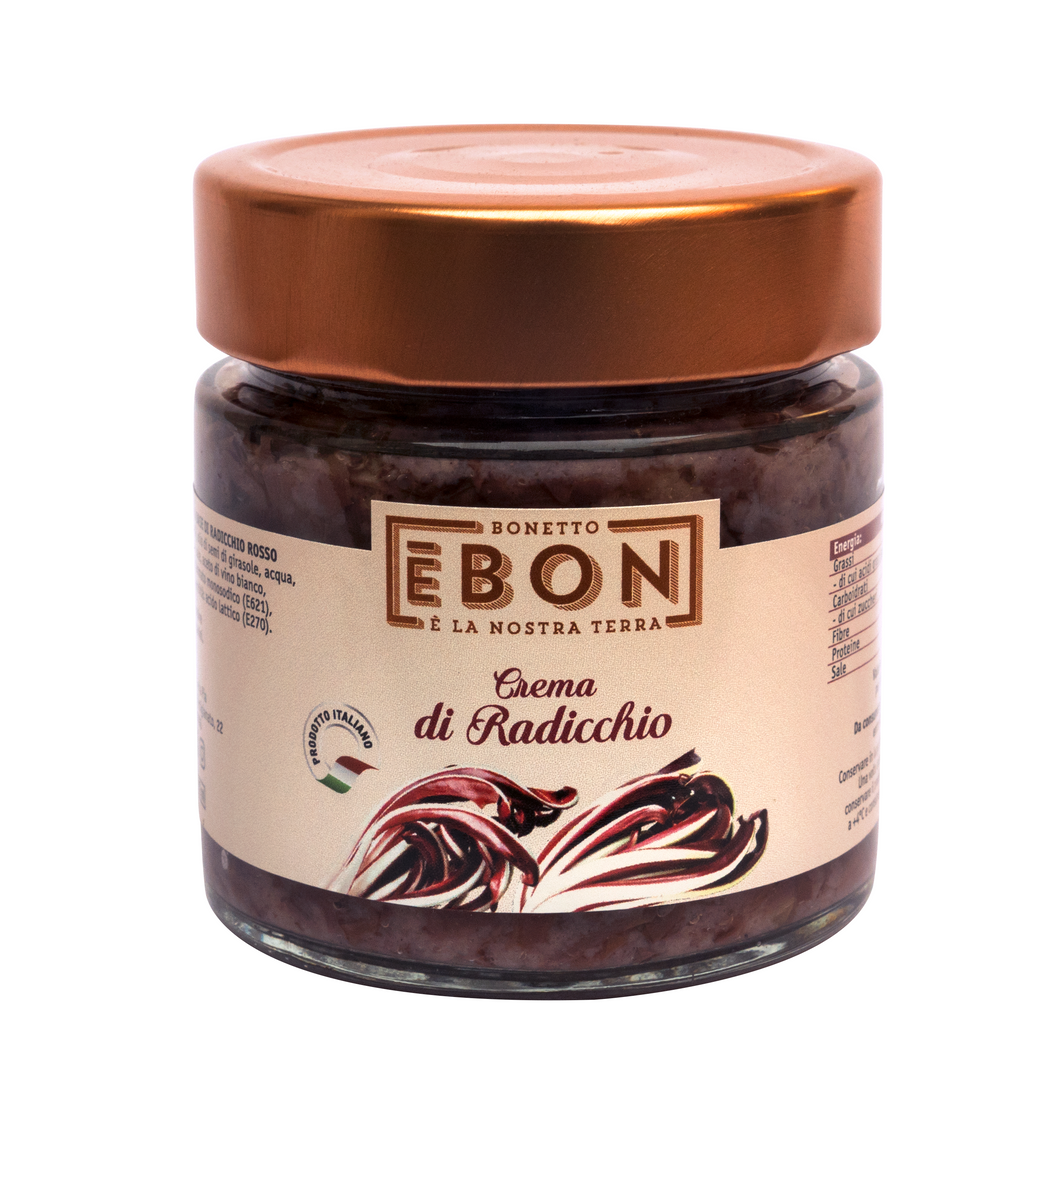 Bonetto Red Chicory Radicchio Cream Spread, 7.04 oz